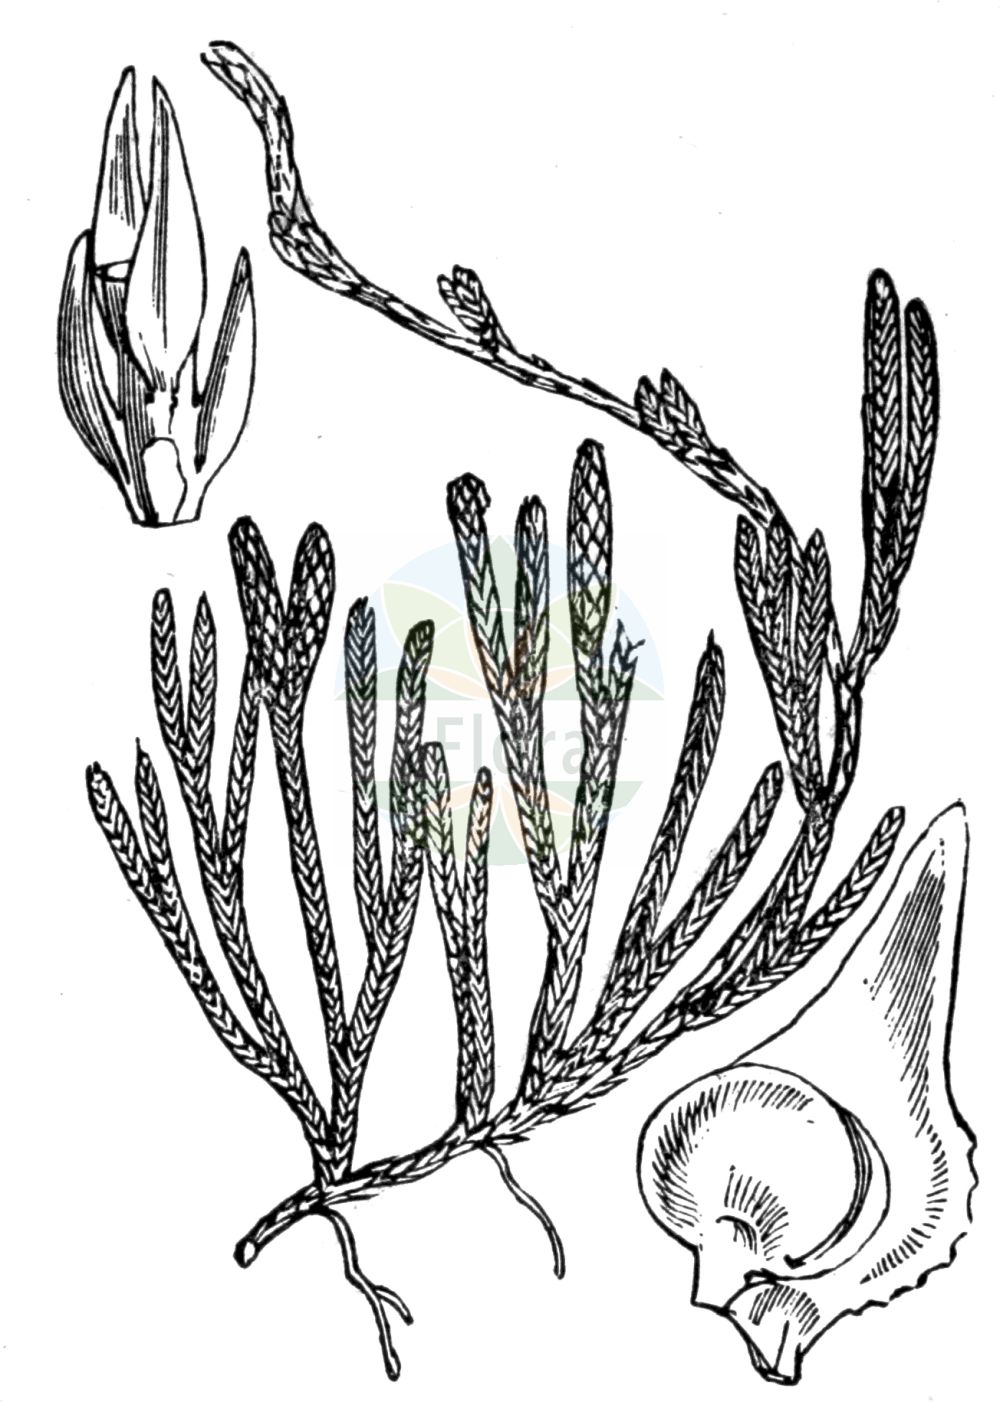 Historische Abbildung von Lycopodium alpinum (Alpen-Flachbärlapp - Alpine Clubmoss). Das Bild zeigt Blatt, Bluete, Frucht und Same. ---- Historical Drawing of Lycopodium alpinum (Alpen-Flachbärlapp - Alpine Clubmoss). The image is showing leaf, flower, fruit and seed.(Lycopodium alpinum,Alpen-Flachbärlapp,Alpine Clubmoss,Diphasiastrum alpinum,Diphasiastrum kablikianum,Diphasium alpinum,Lycopodium alpinum,Lycopodium alpinum subsp. kablikianum,Alpen-Flachbaerlapp,Alpen-Baerlapp,Alpine Clubmoss,Lycopodium,Bärlapp,Clubmoss,Lycopodiaceae,Bärlappgewächse,Clubmoss family,Blatt,Bluete,Frucht,Same,leaf,flower,fruit,seed,Fitch et al. (1880))